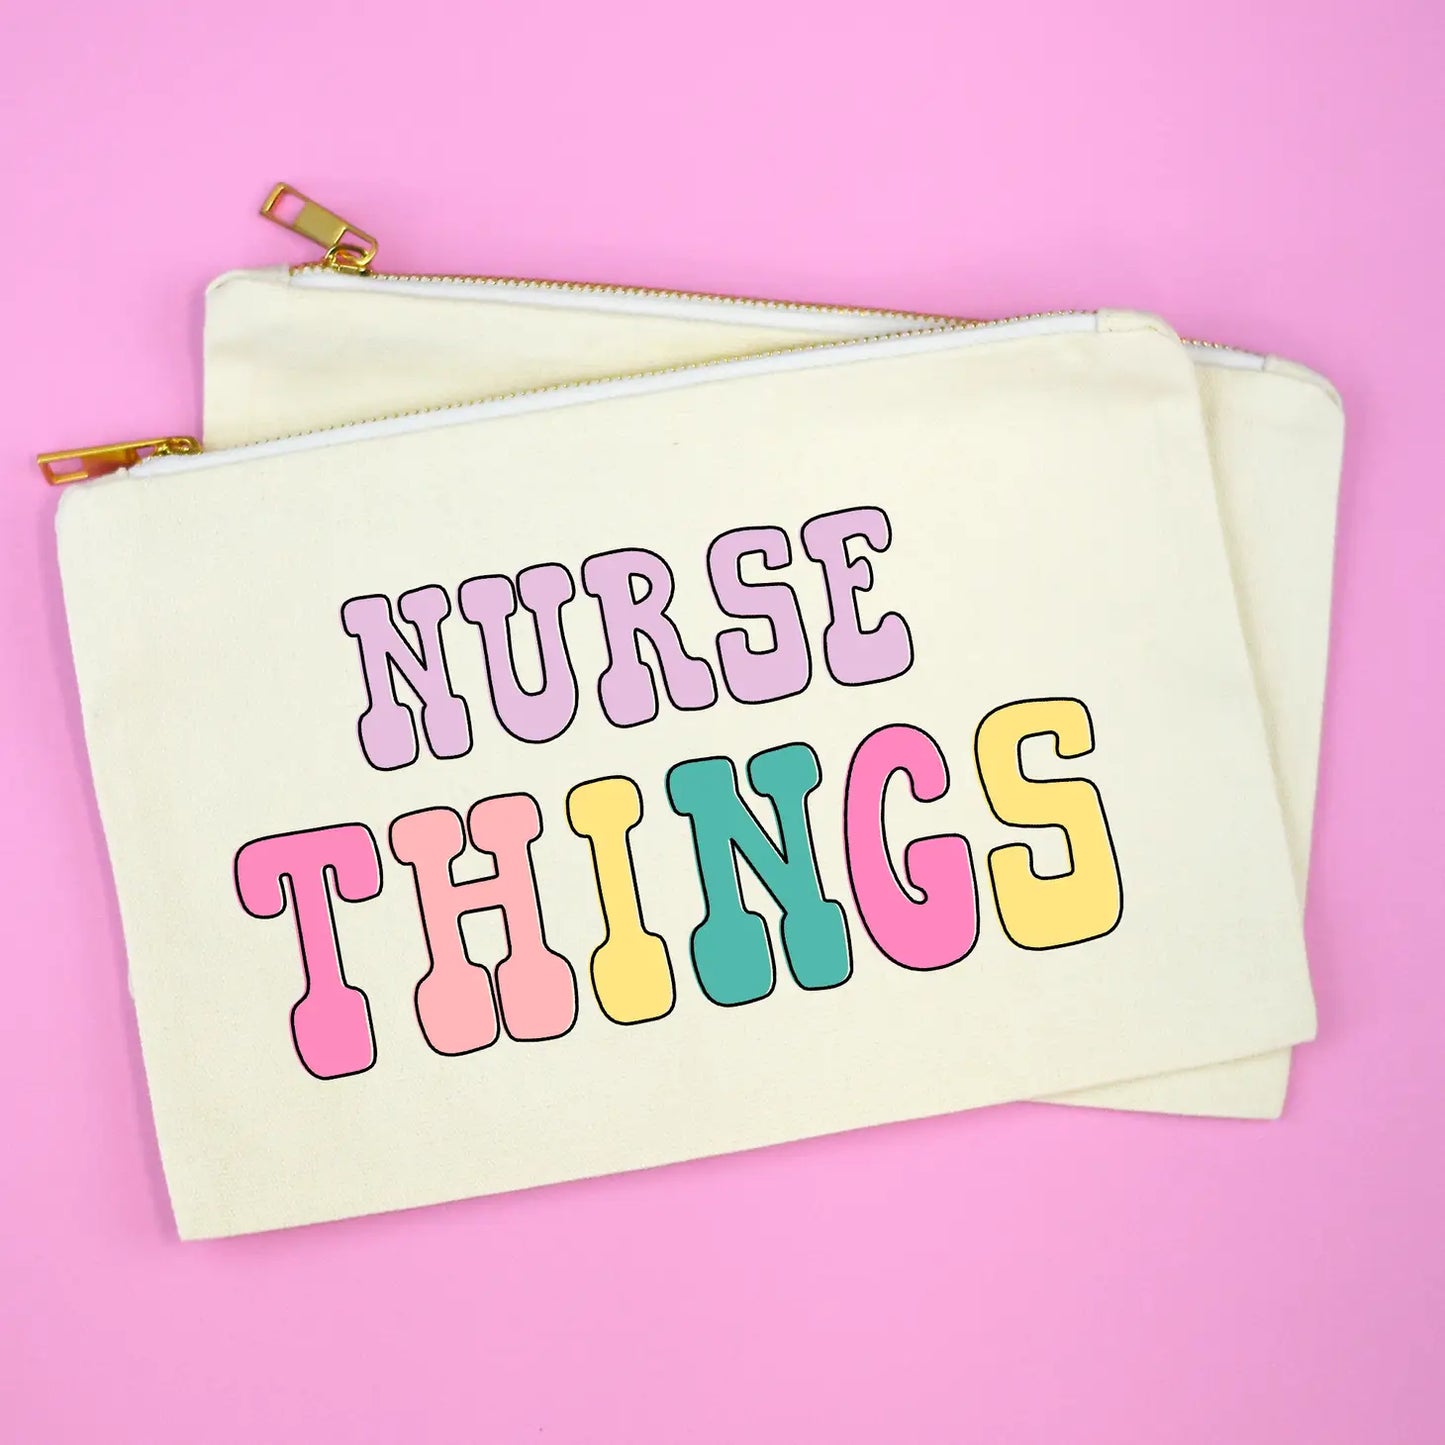 Nurse Things Cosmetic Bag